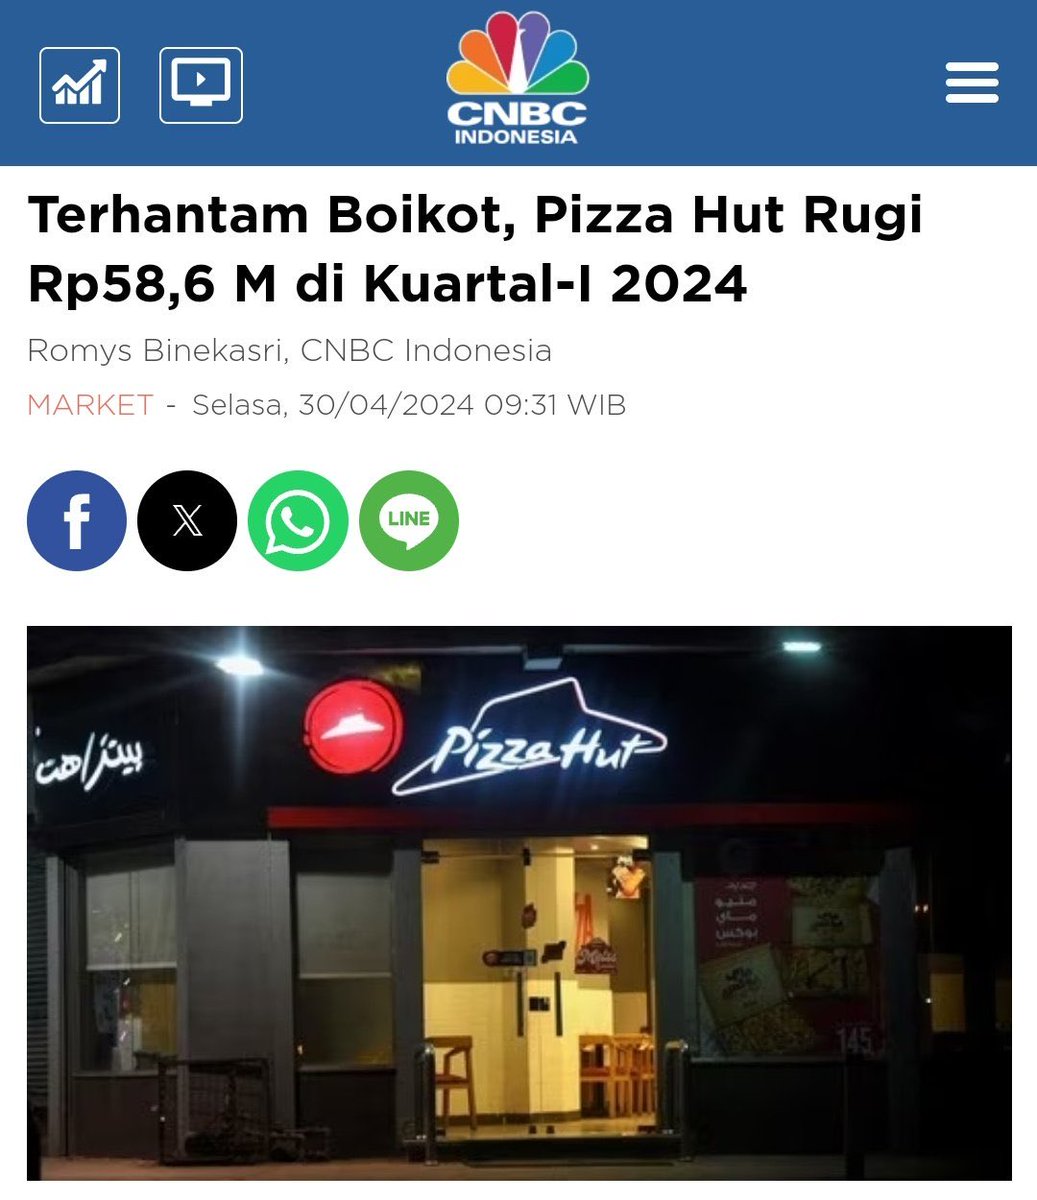 Dampak boikot Pizza Hut rugi 58M di Q1 2024, para karyawan yg mayoritas Muslim jujur terancam PHK tapi peluru Israel tidak habis2.

Pengangguran yg tereak2 boikot pada nyantai dirumah, tidak mikirin nasib para karyawan ini.